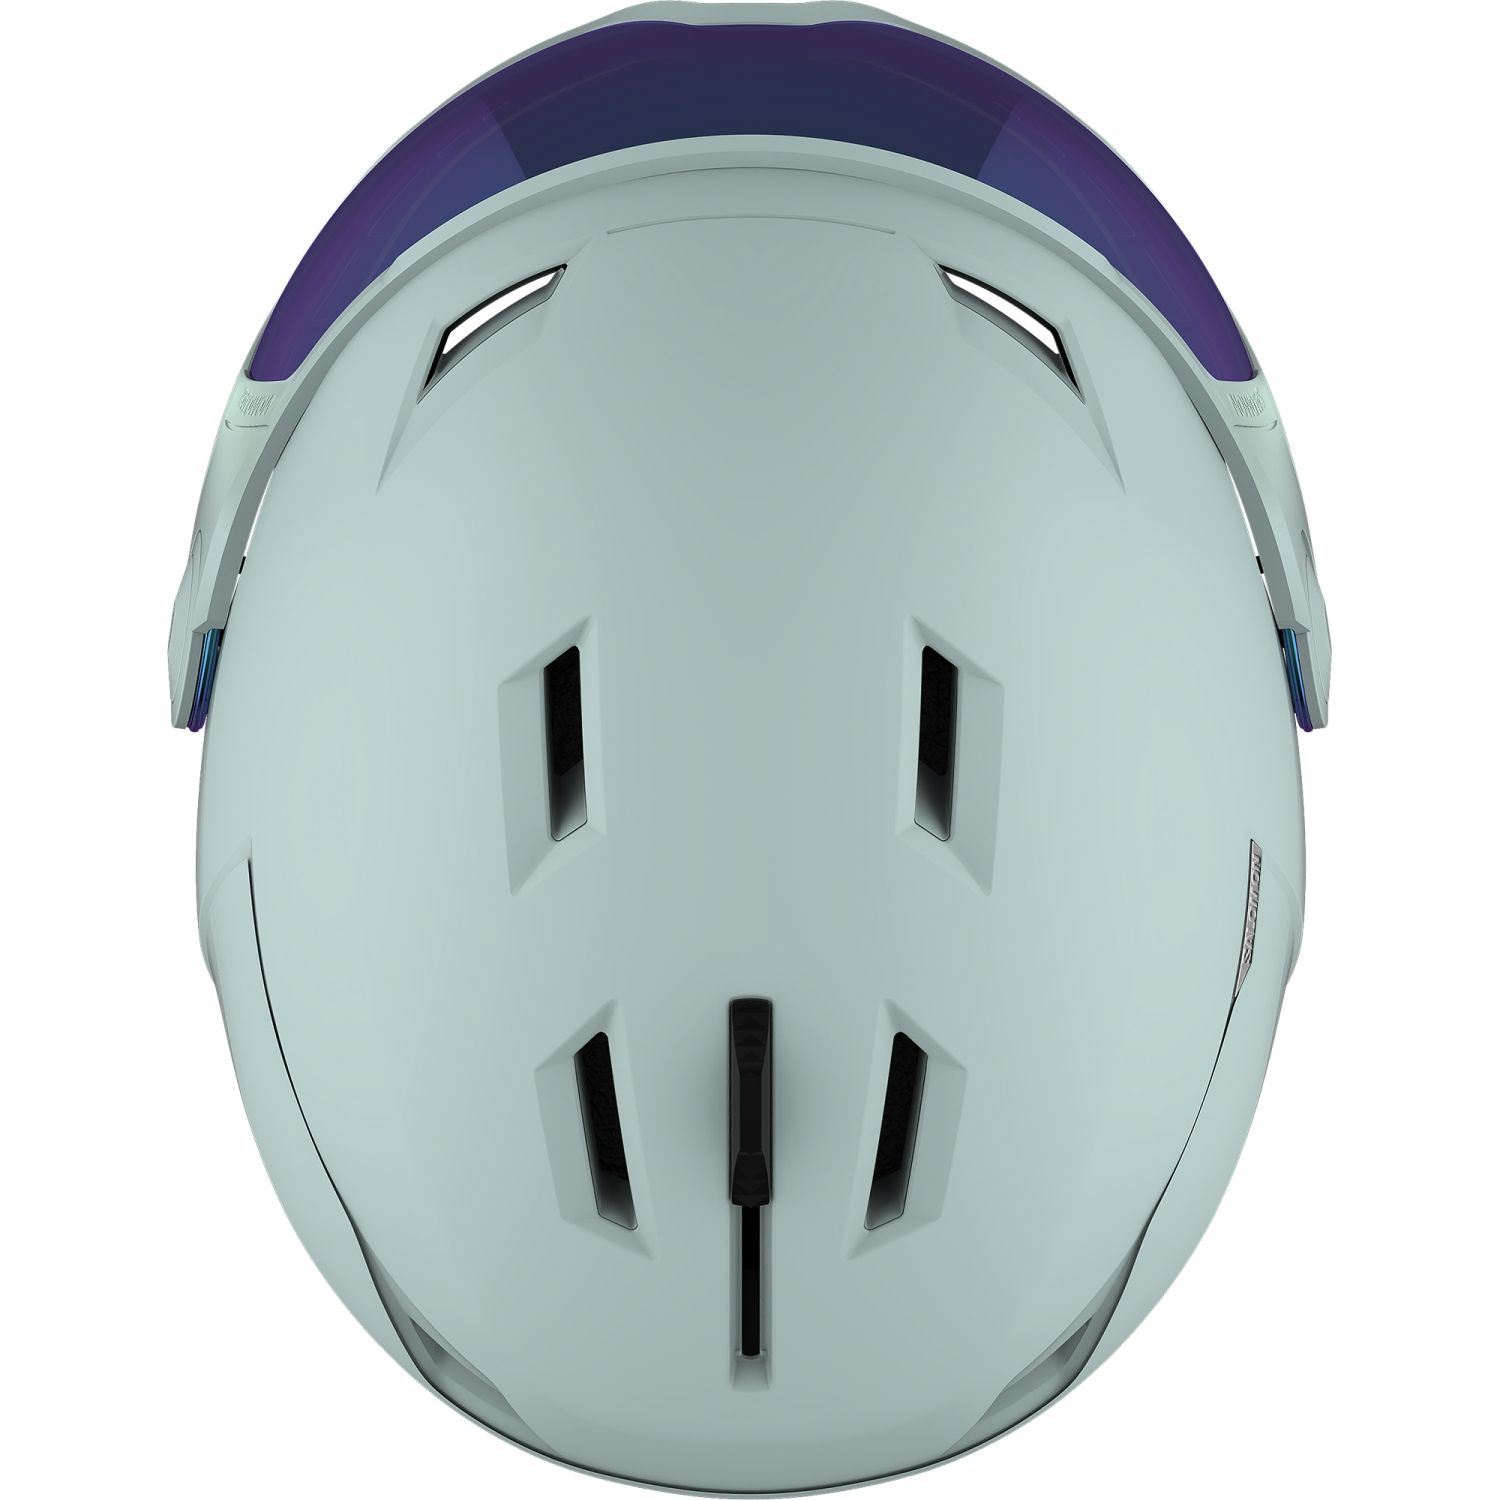 Salomon Icon LT Visor, ski helmet, white moss